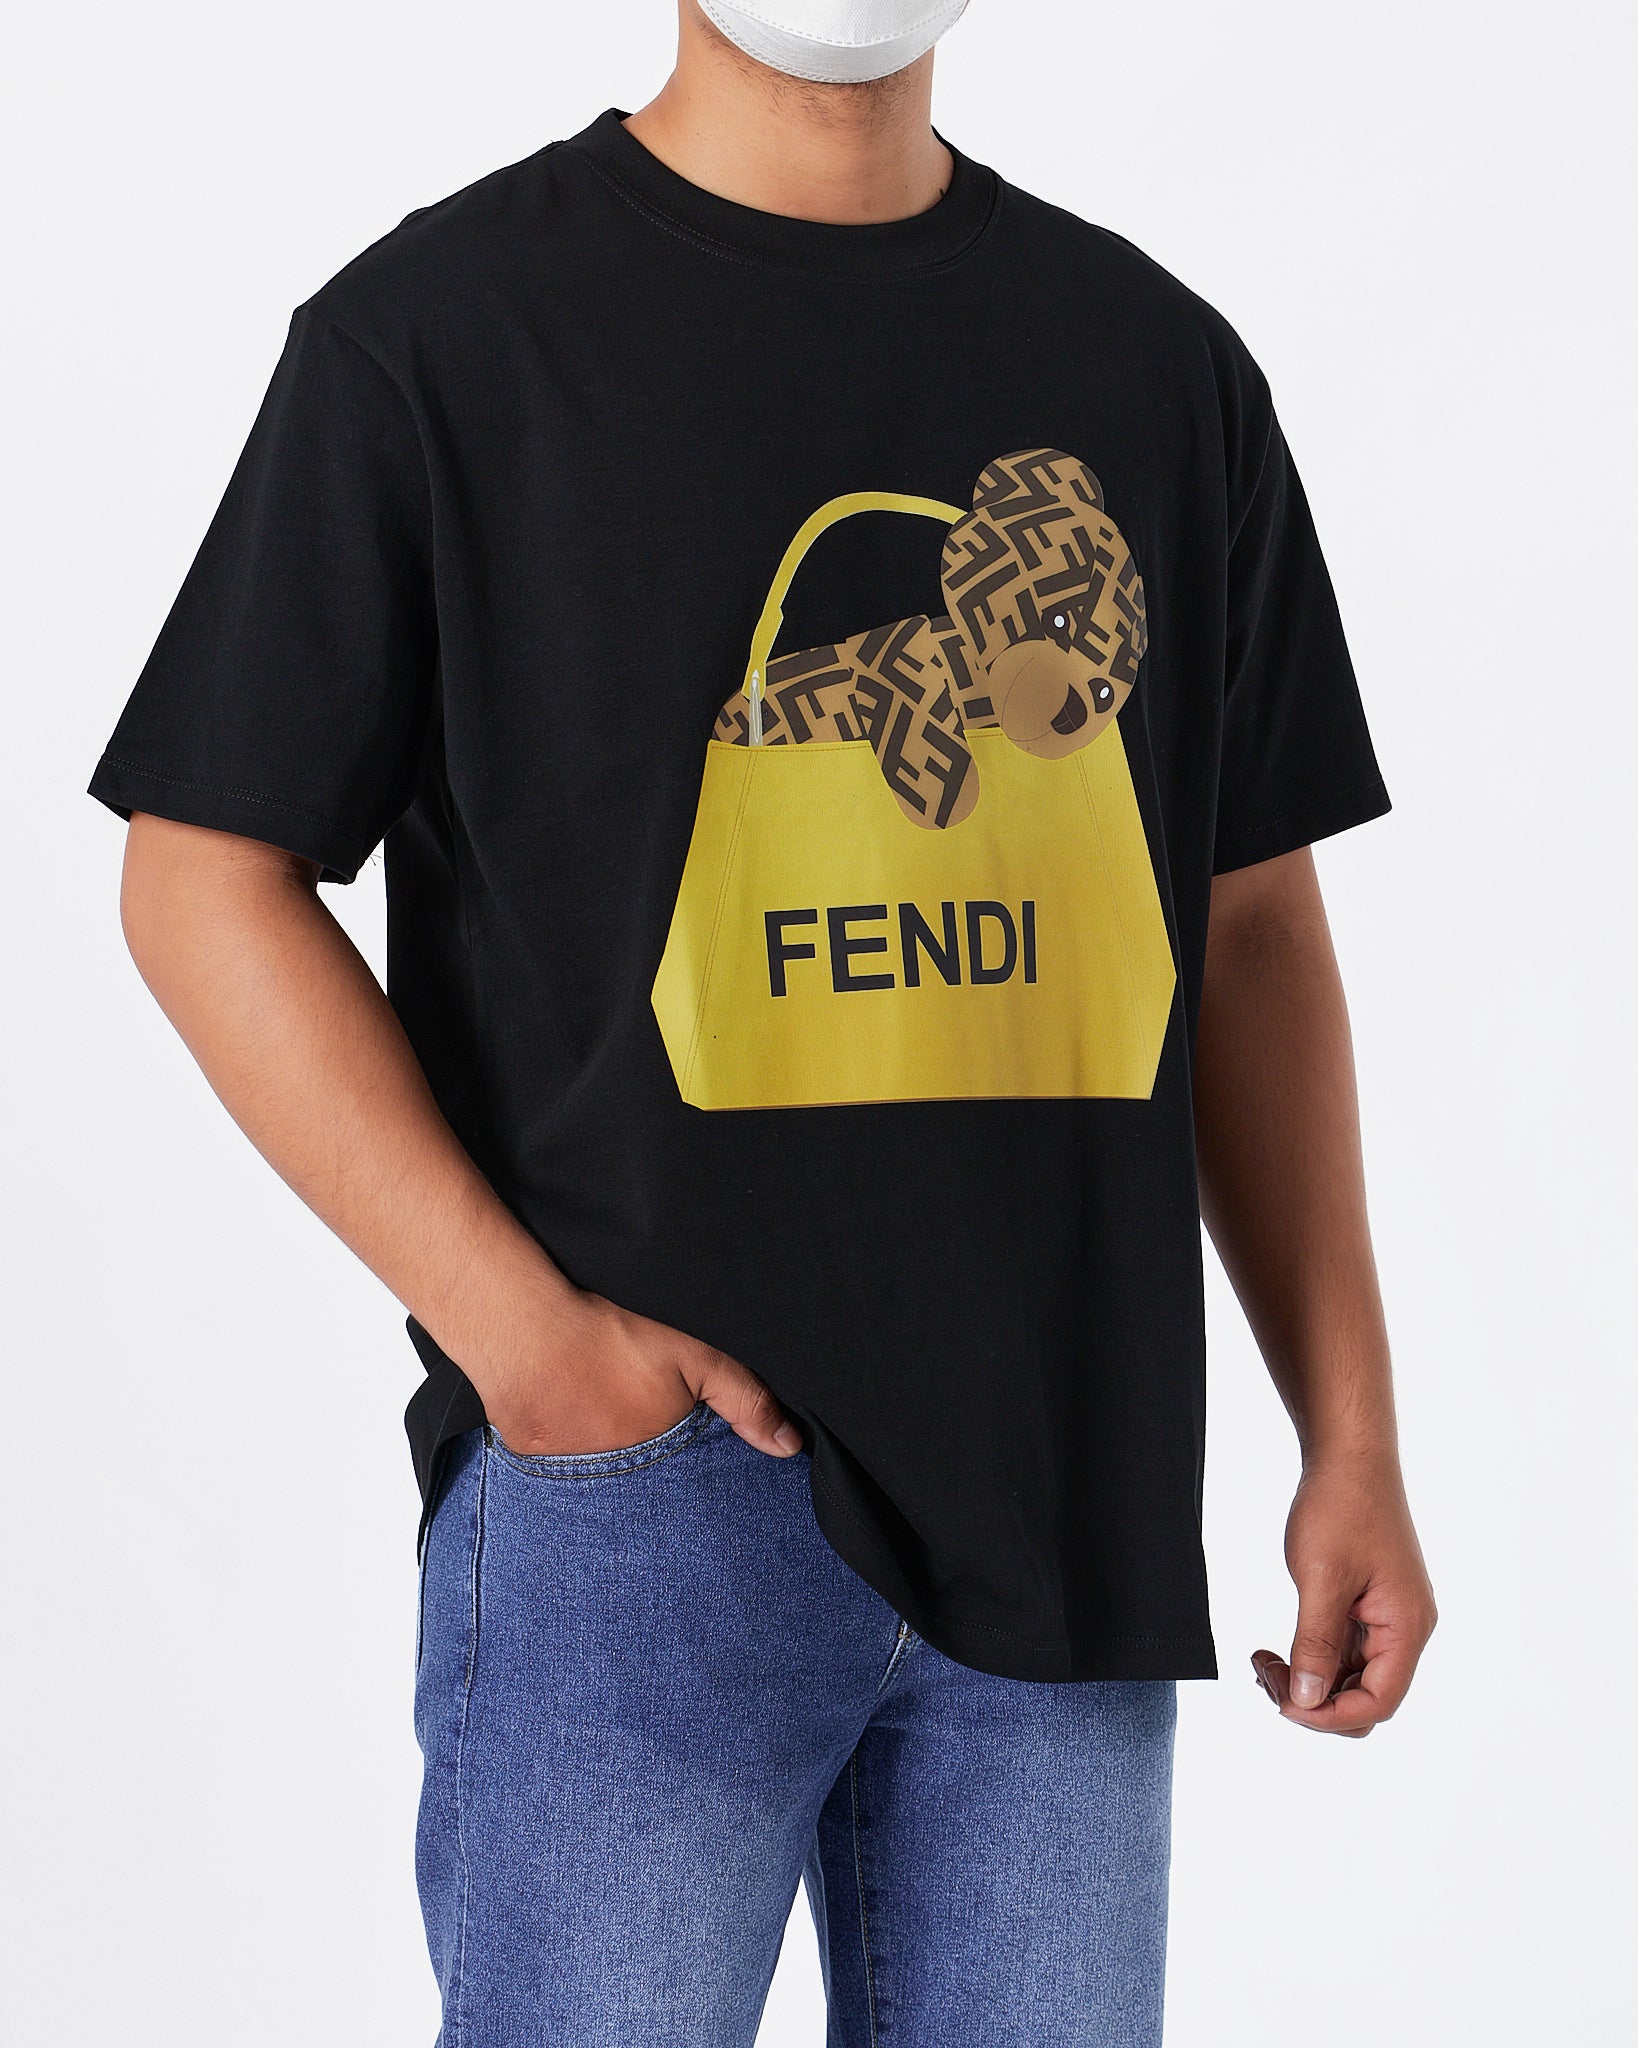 FEN Teddy Bear Printed Unisex Black T-Shirt 20.90